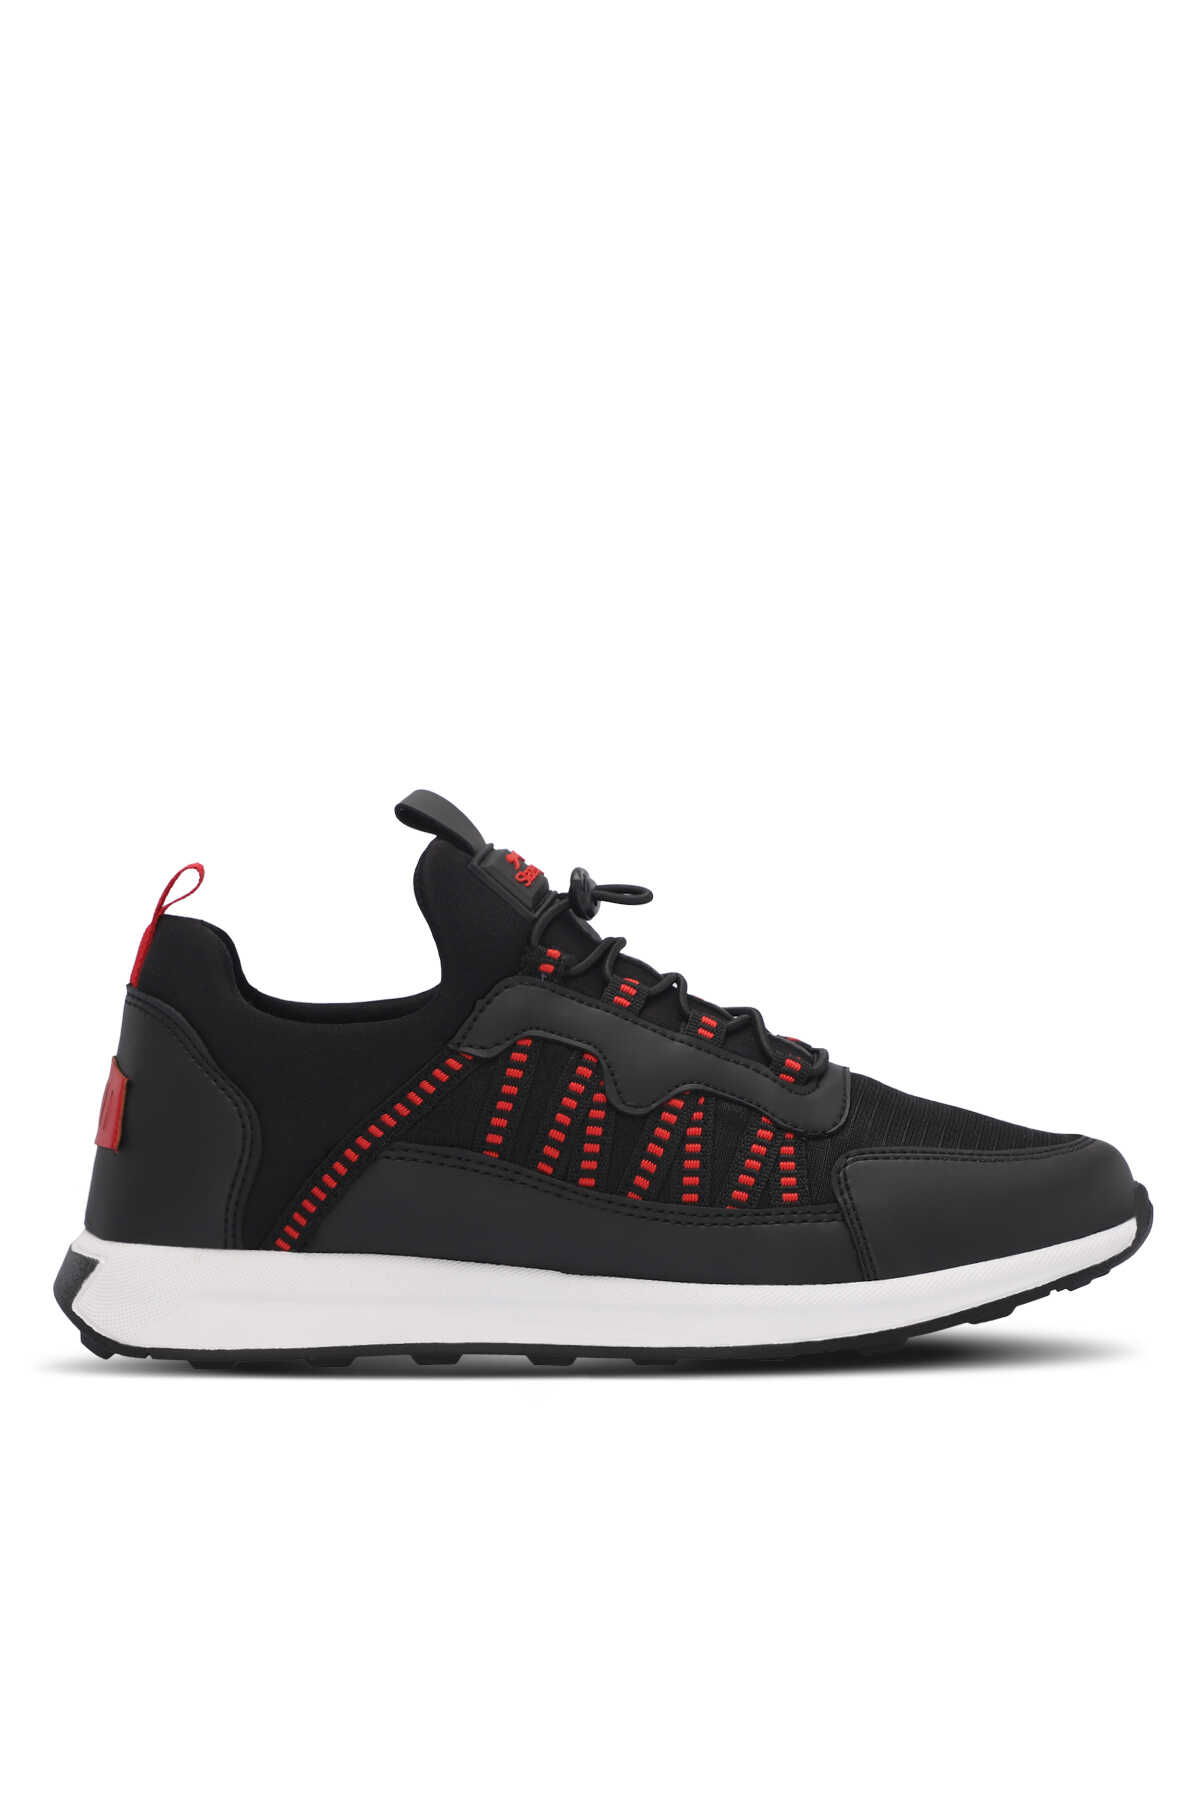 Slazenger - Slazenger TITAN I Erkek Sneaker Ayakkabı Siyah / Kırmızı